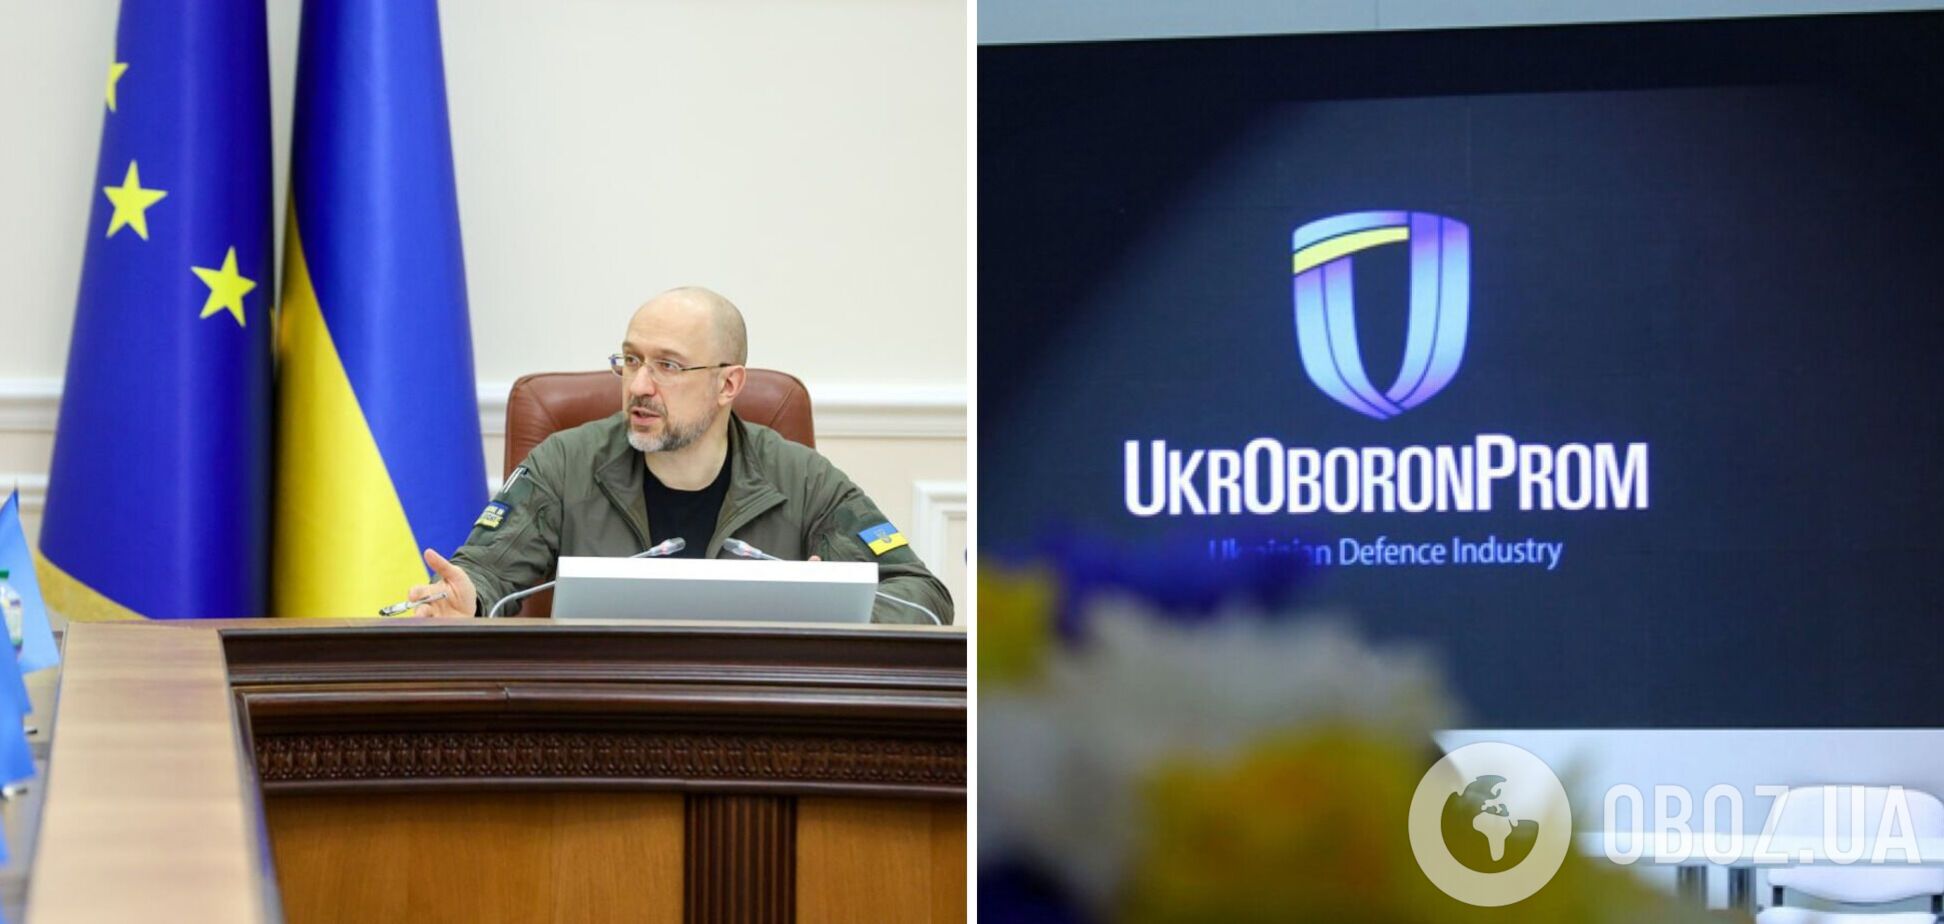 Госконцерн ‘Укроборонпром’ заменят на акционерное общество в госсобственности